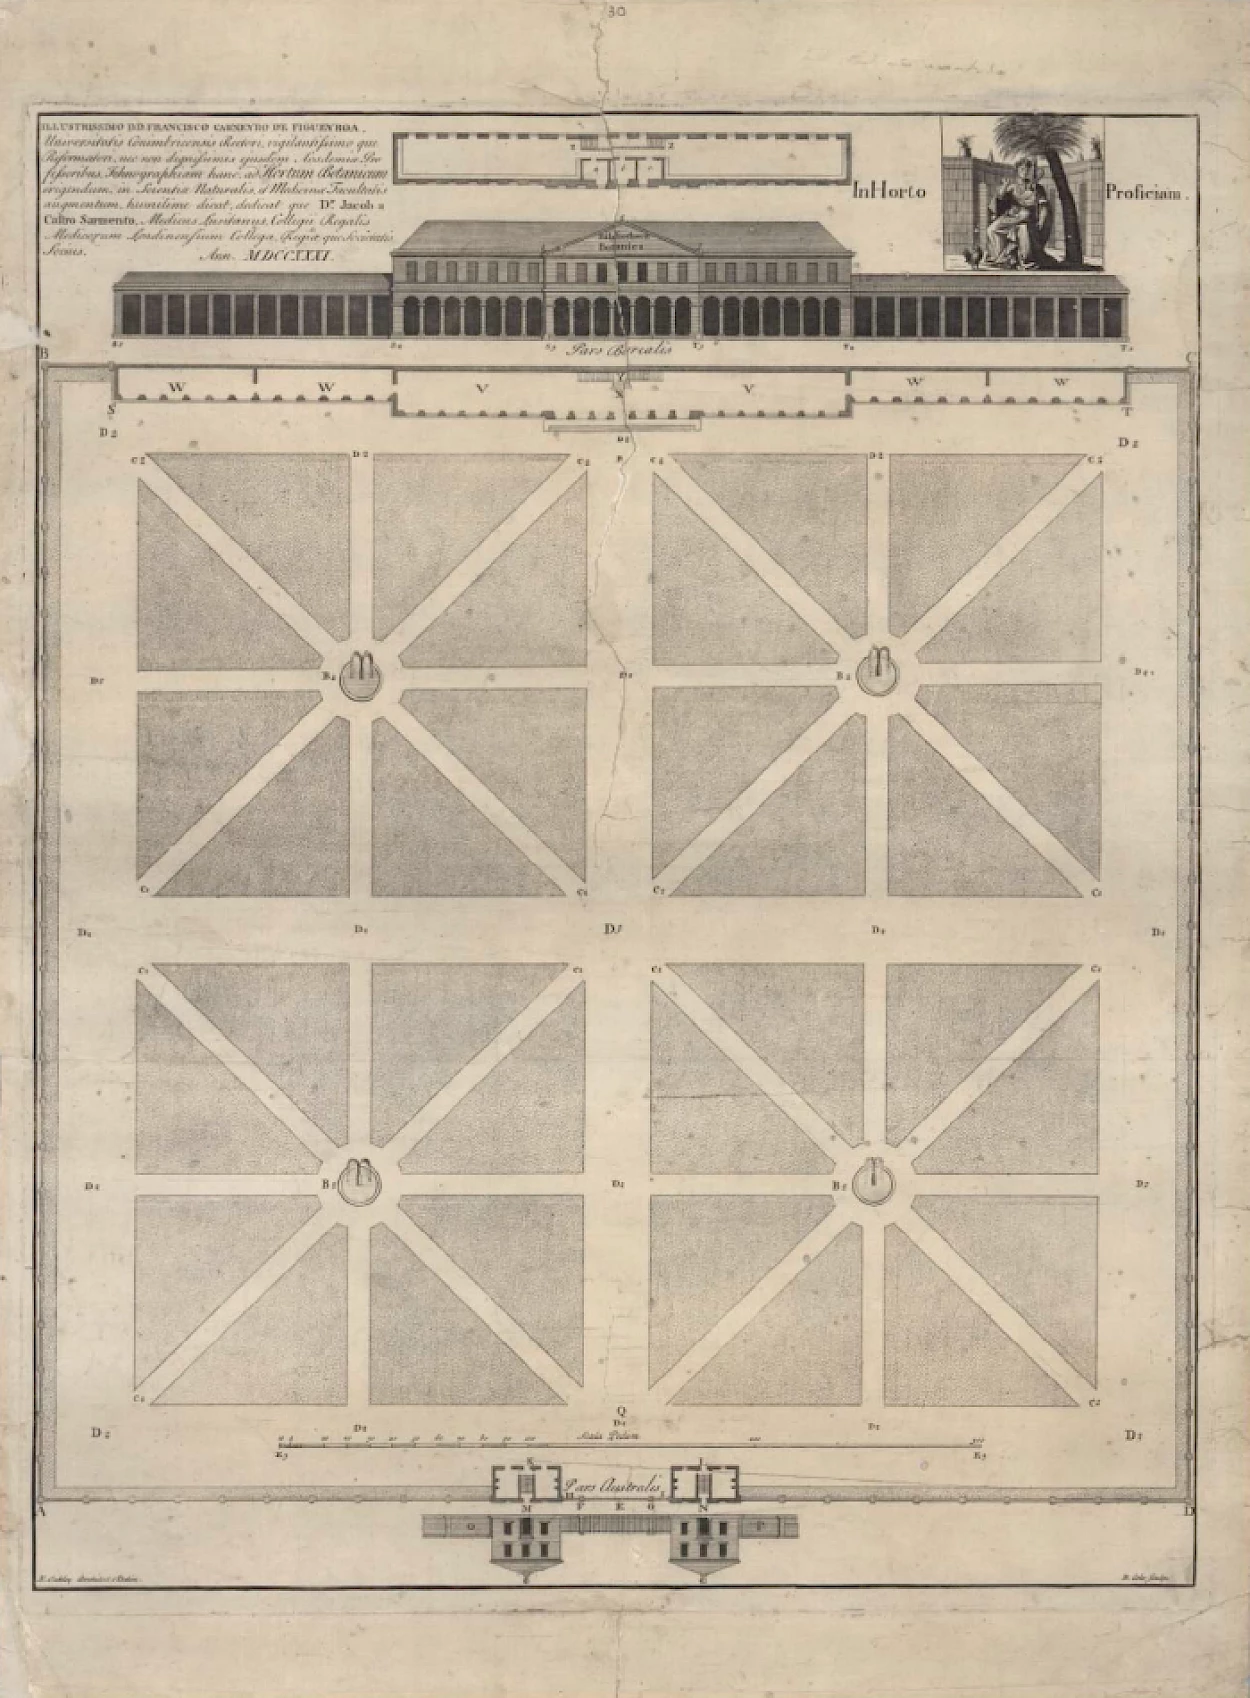 Fig. 1 - Planta para um horto botânico enviado por Jacob de Castro Sarmento à Universidade de Coimbra, em 1731